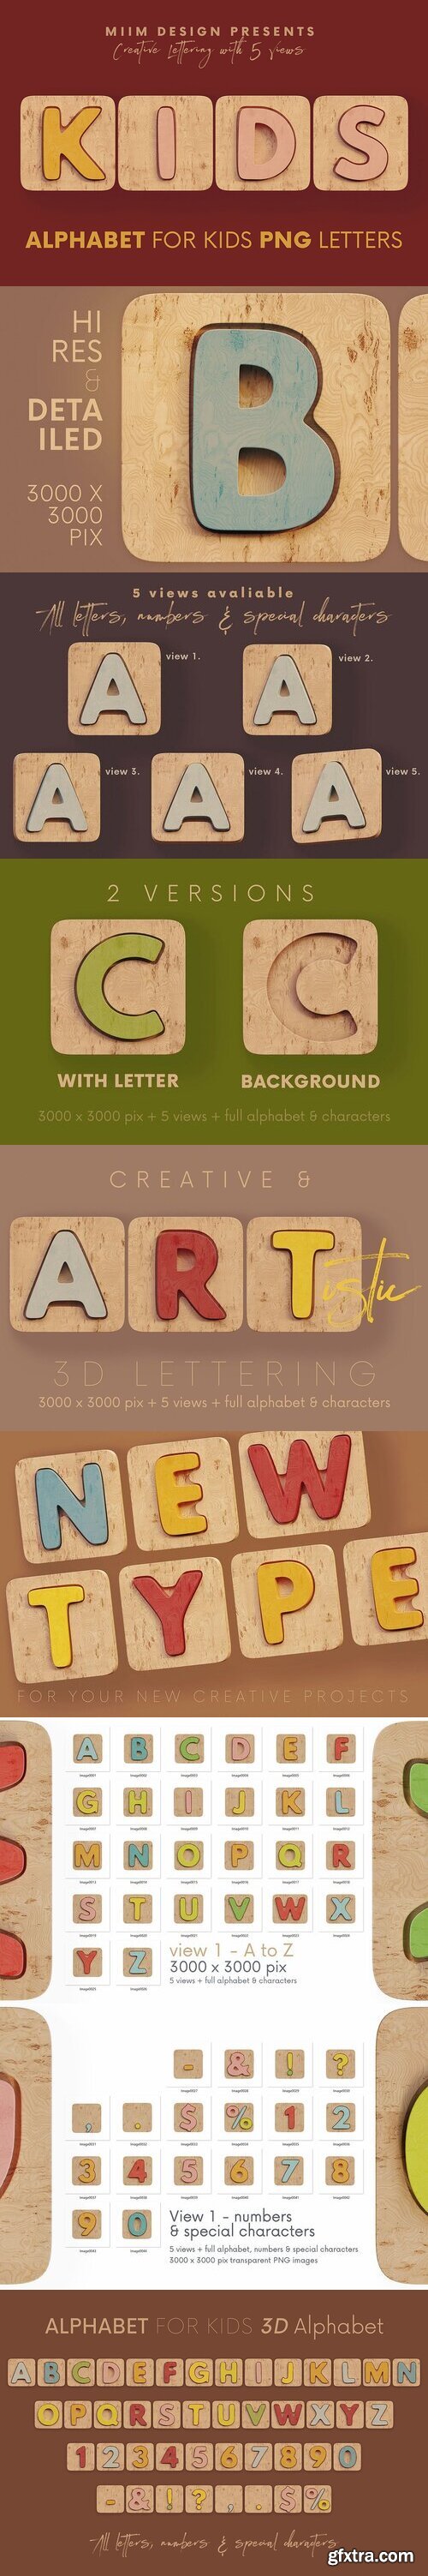 CreativeMarket - Alphabet for Kids - 3D Lettering 10277707